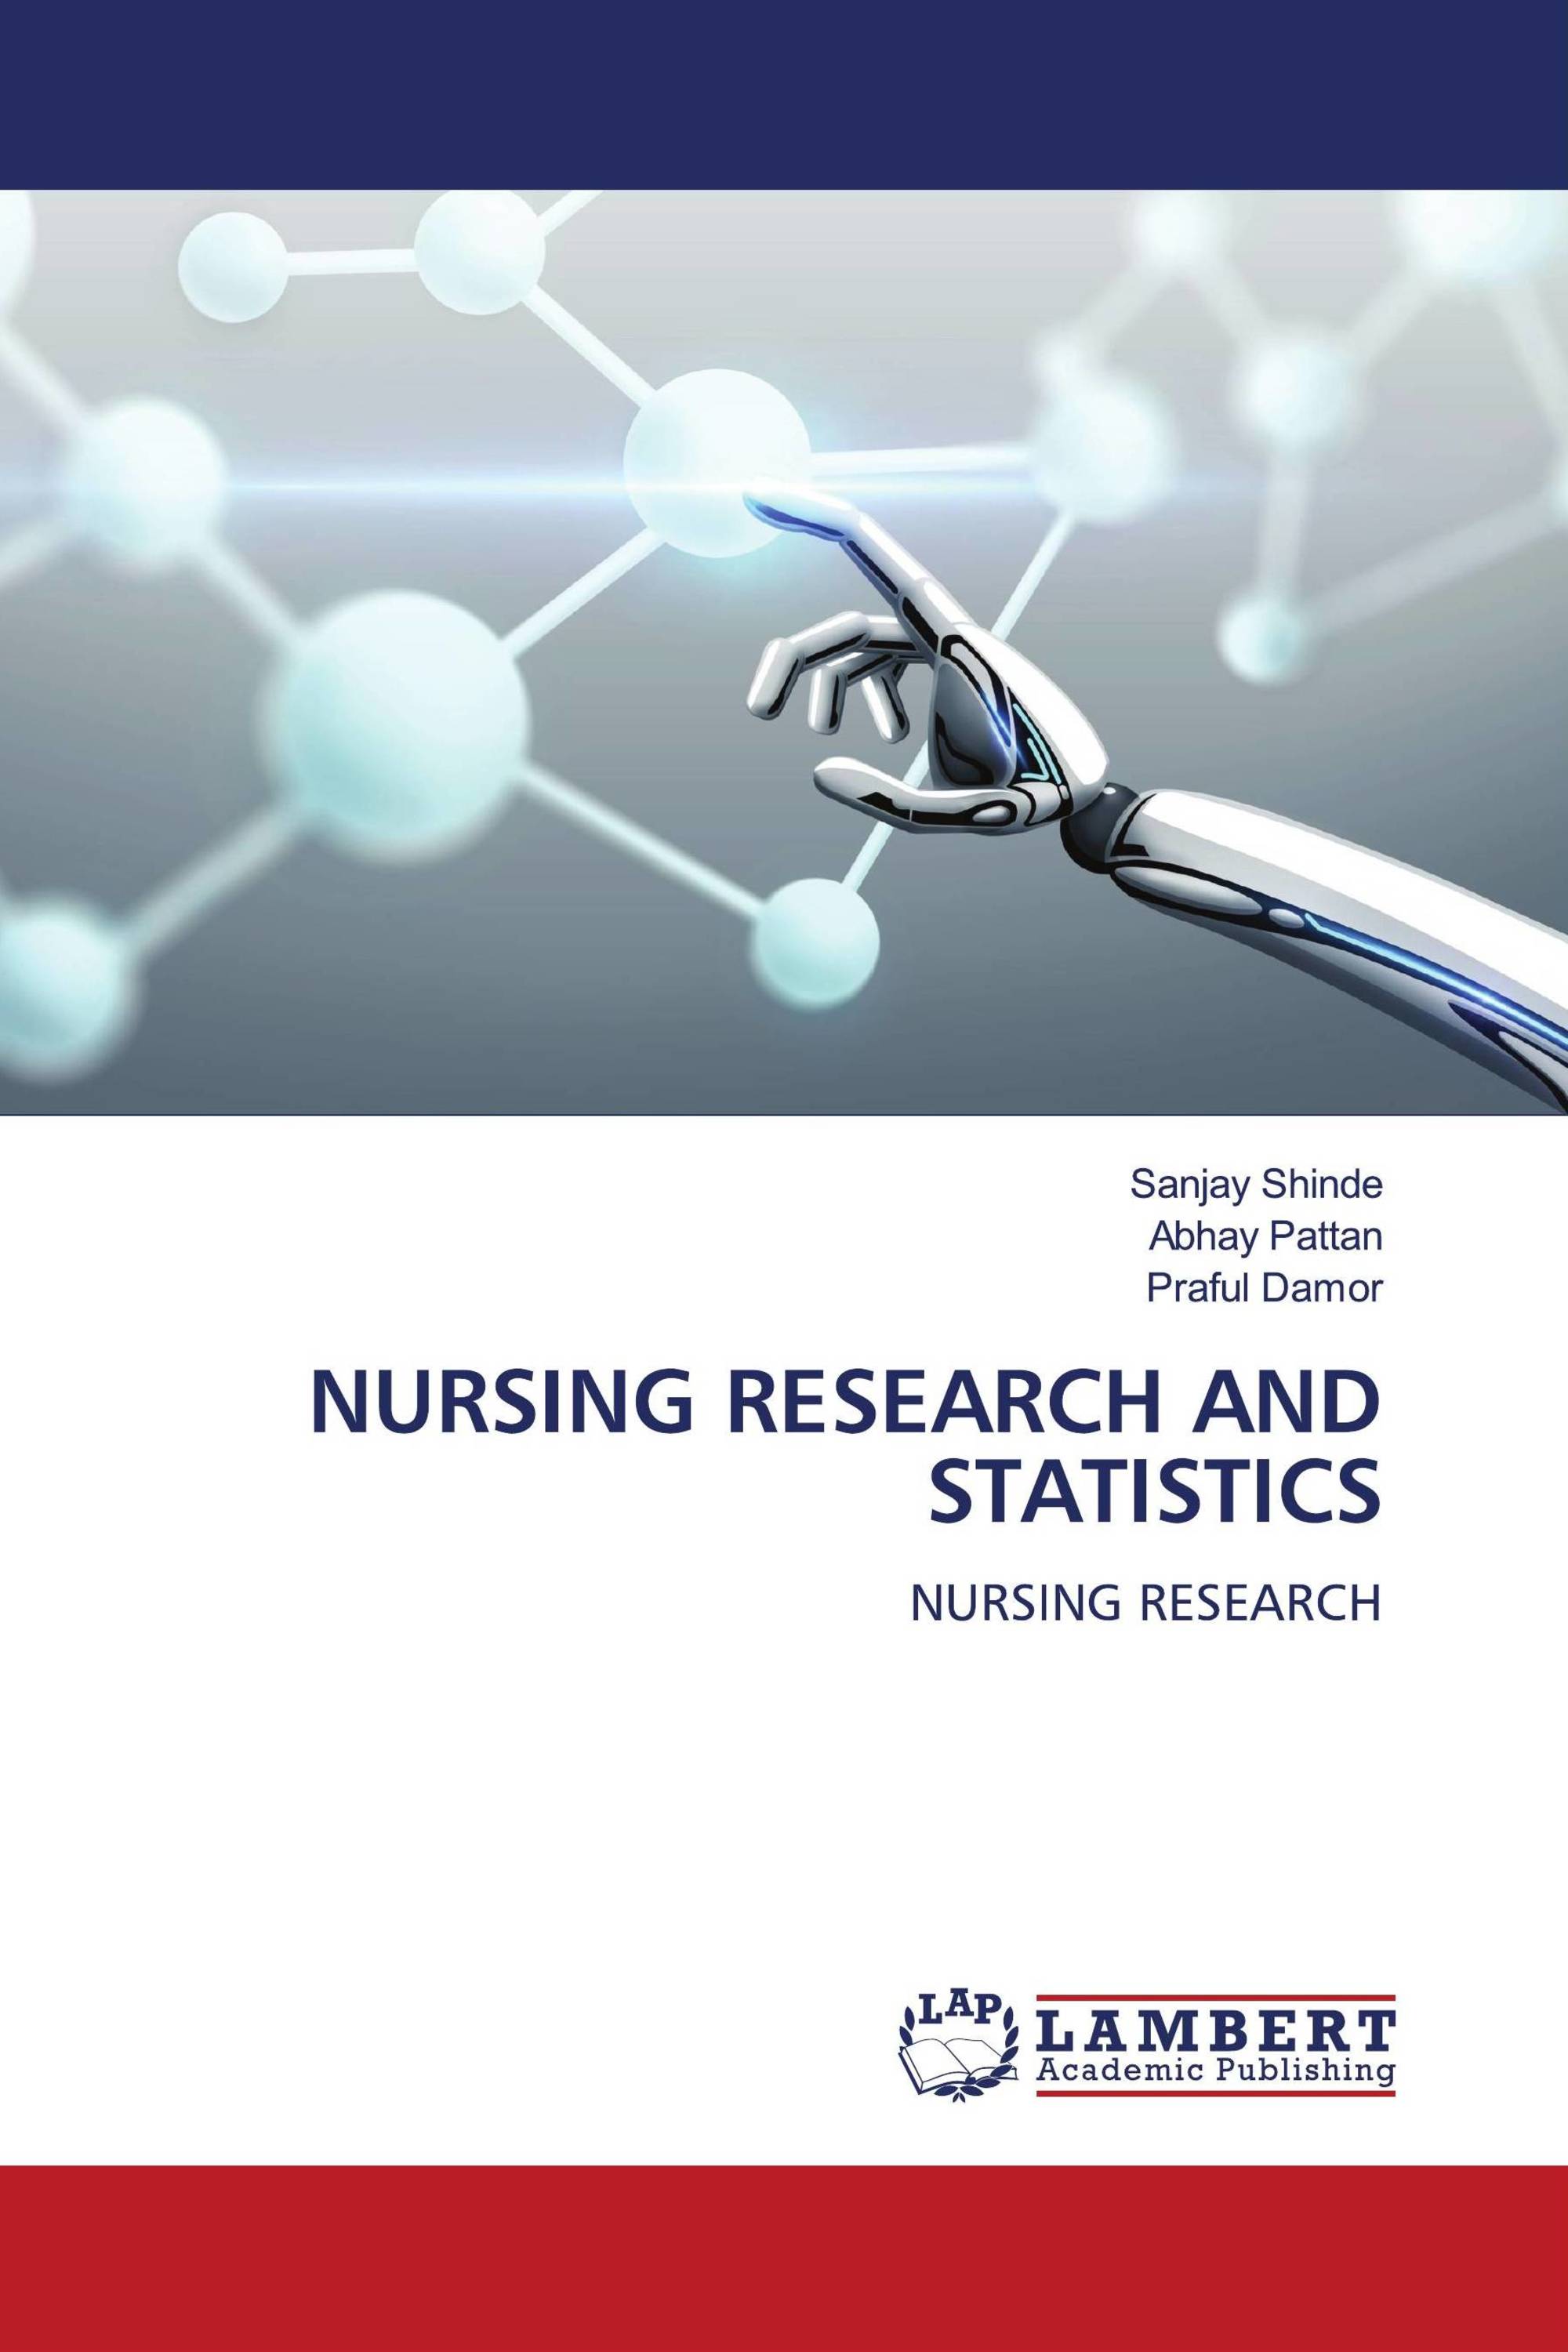 statistics & data analysis for nursing research